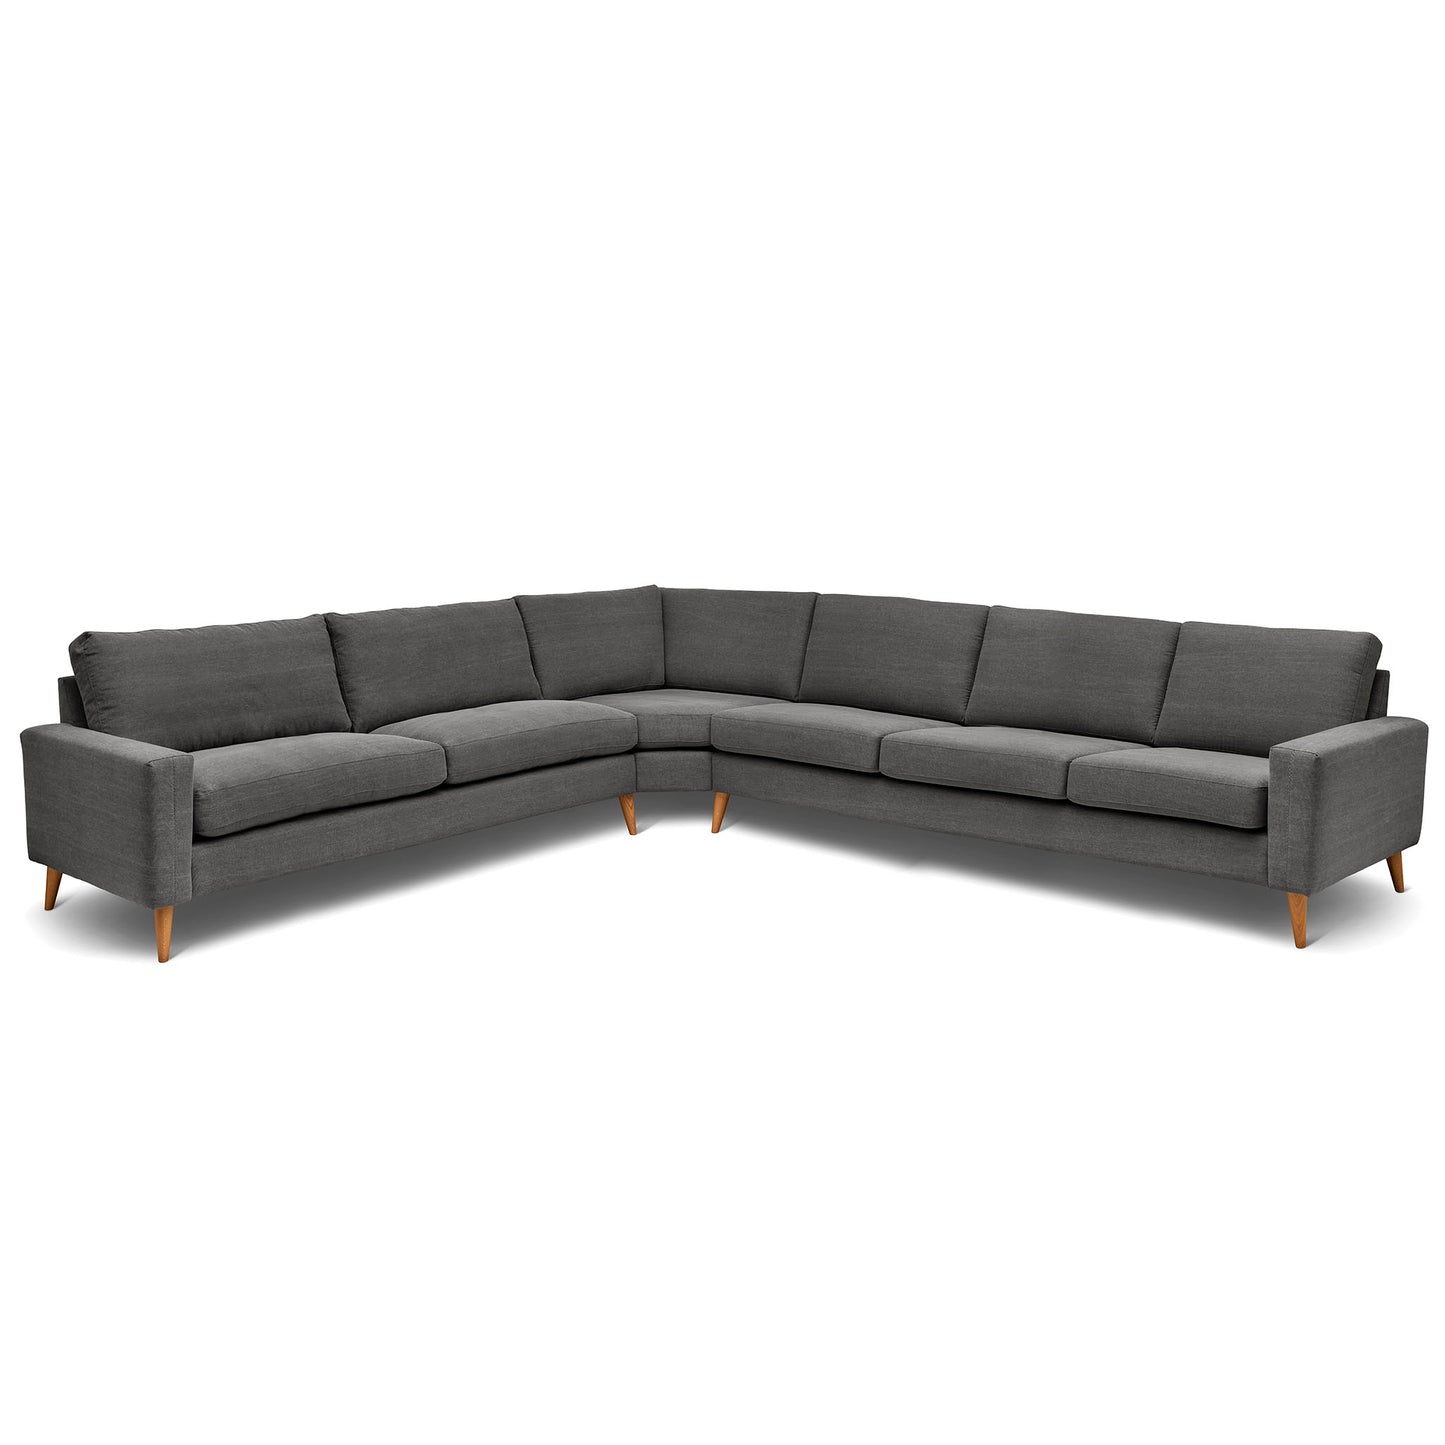 Stor rektangulär hörnsoffa med måttet 321x360 cm. Sittvänlig soffa för äldre i grått tyg